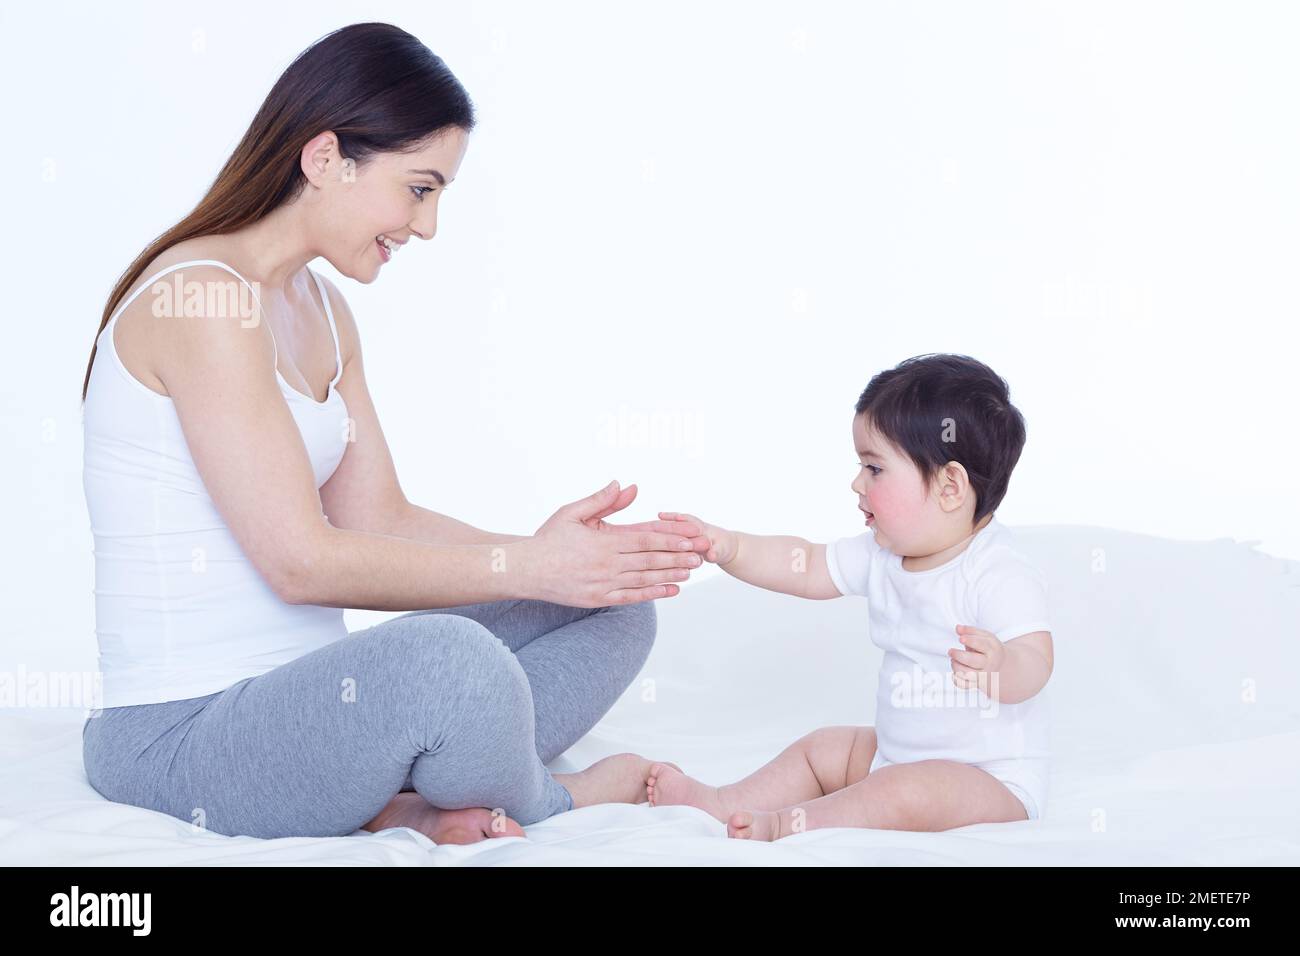 Bébé fille (40 semaines) et mère assise sur le lit, bébé fille touche la main de la mère Banque D'Images